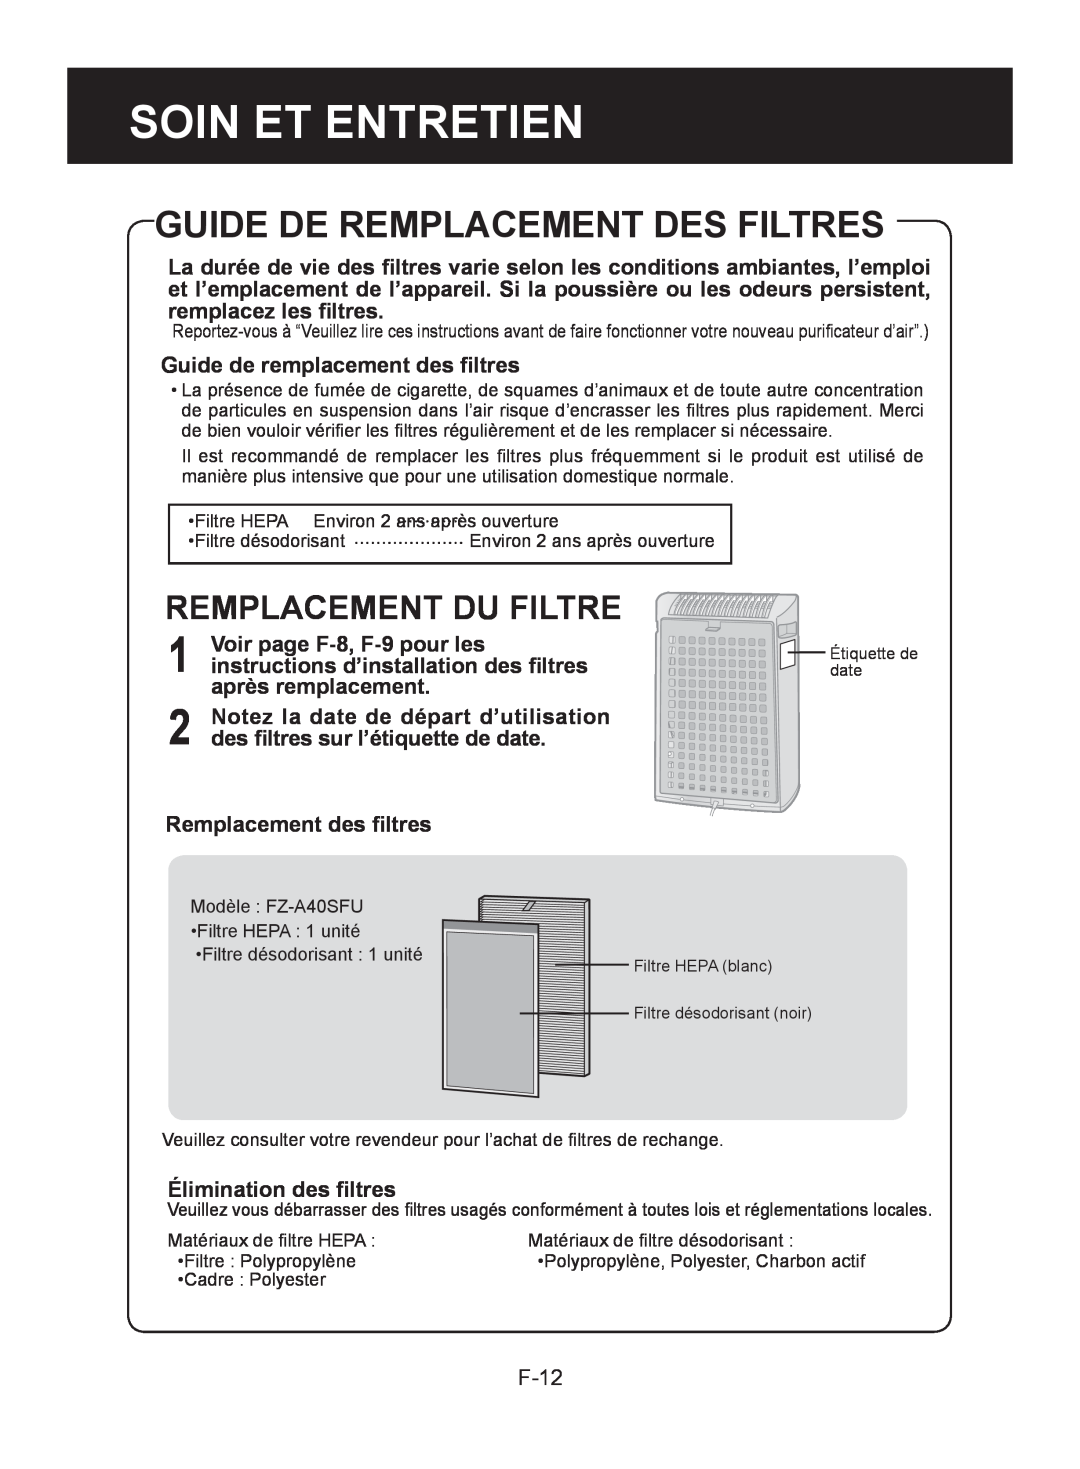 Sharp FP-A40UW, FP-A40C Guide De Remplacement Des Filtres, Remplacement Du Filtre, F-12, Soin Et Entretien 